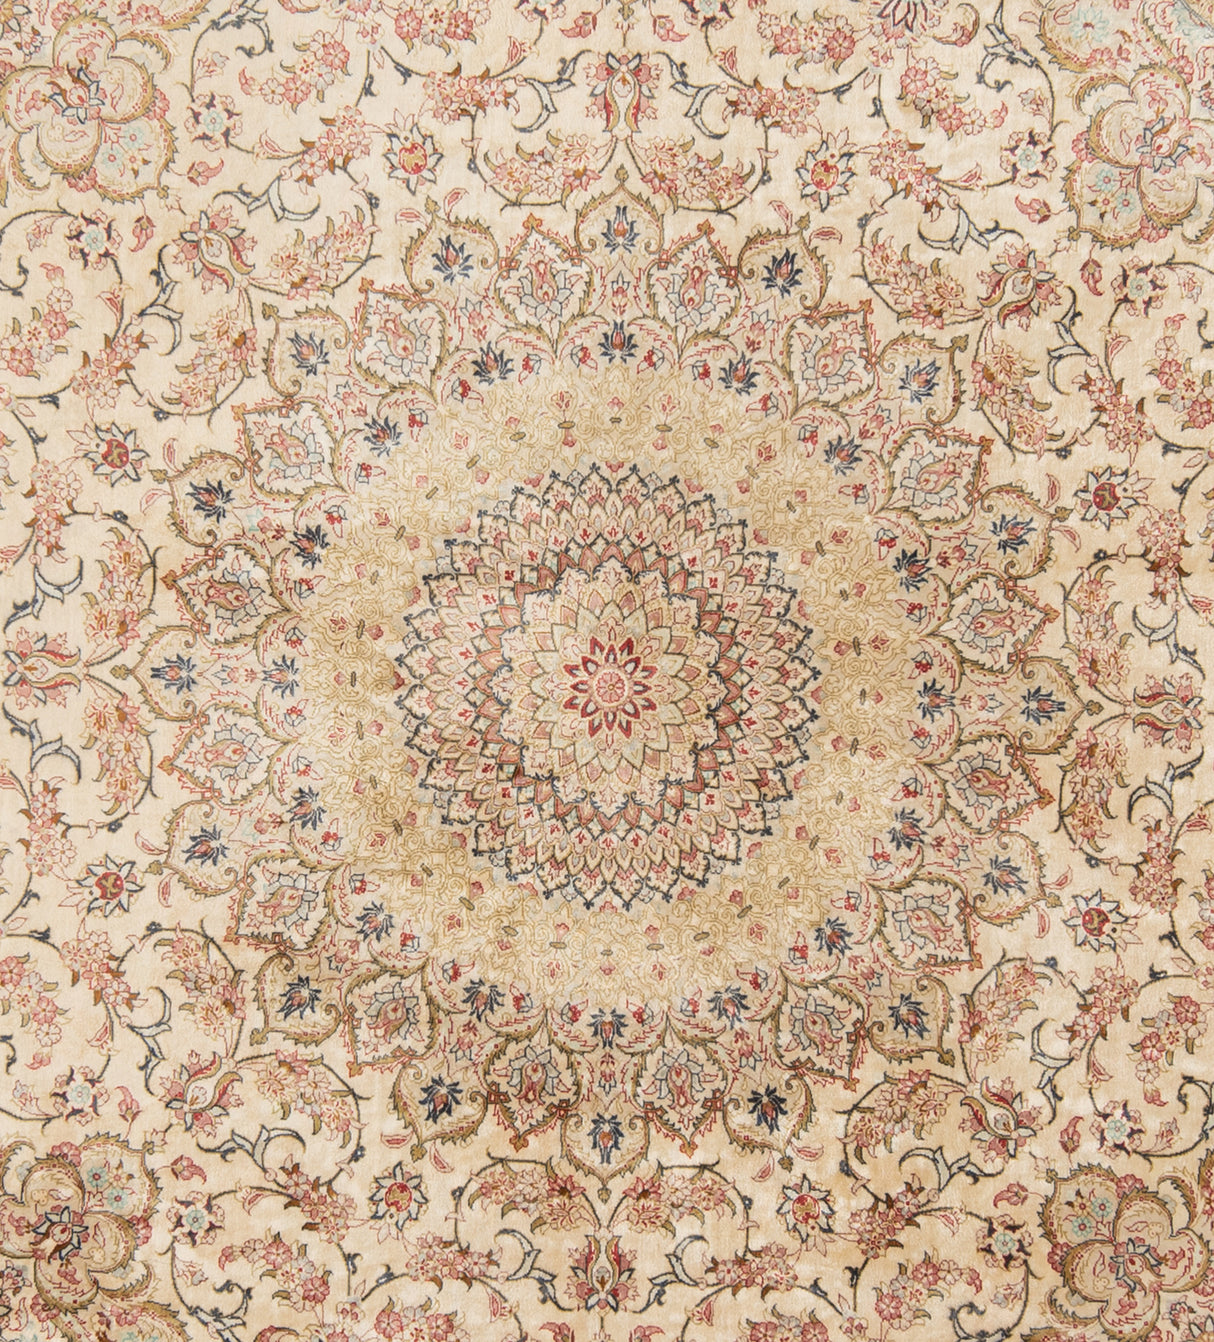 Alfombra persa Fallahati de seda Qom | 198 x 198 cm